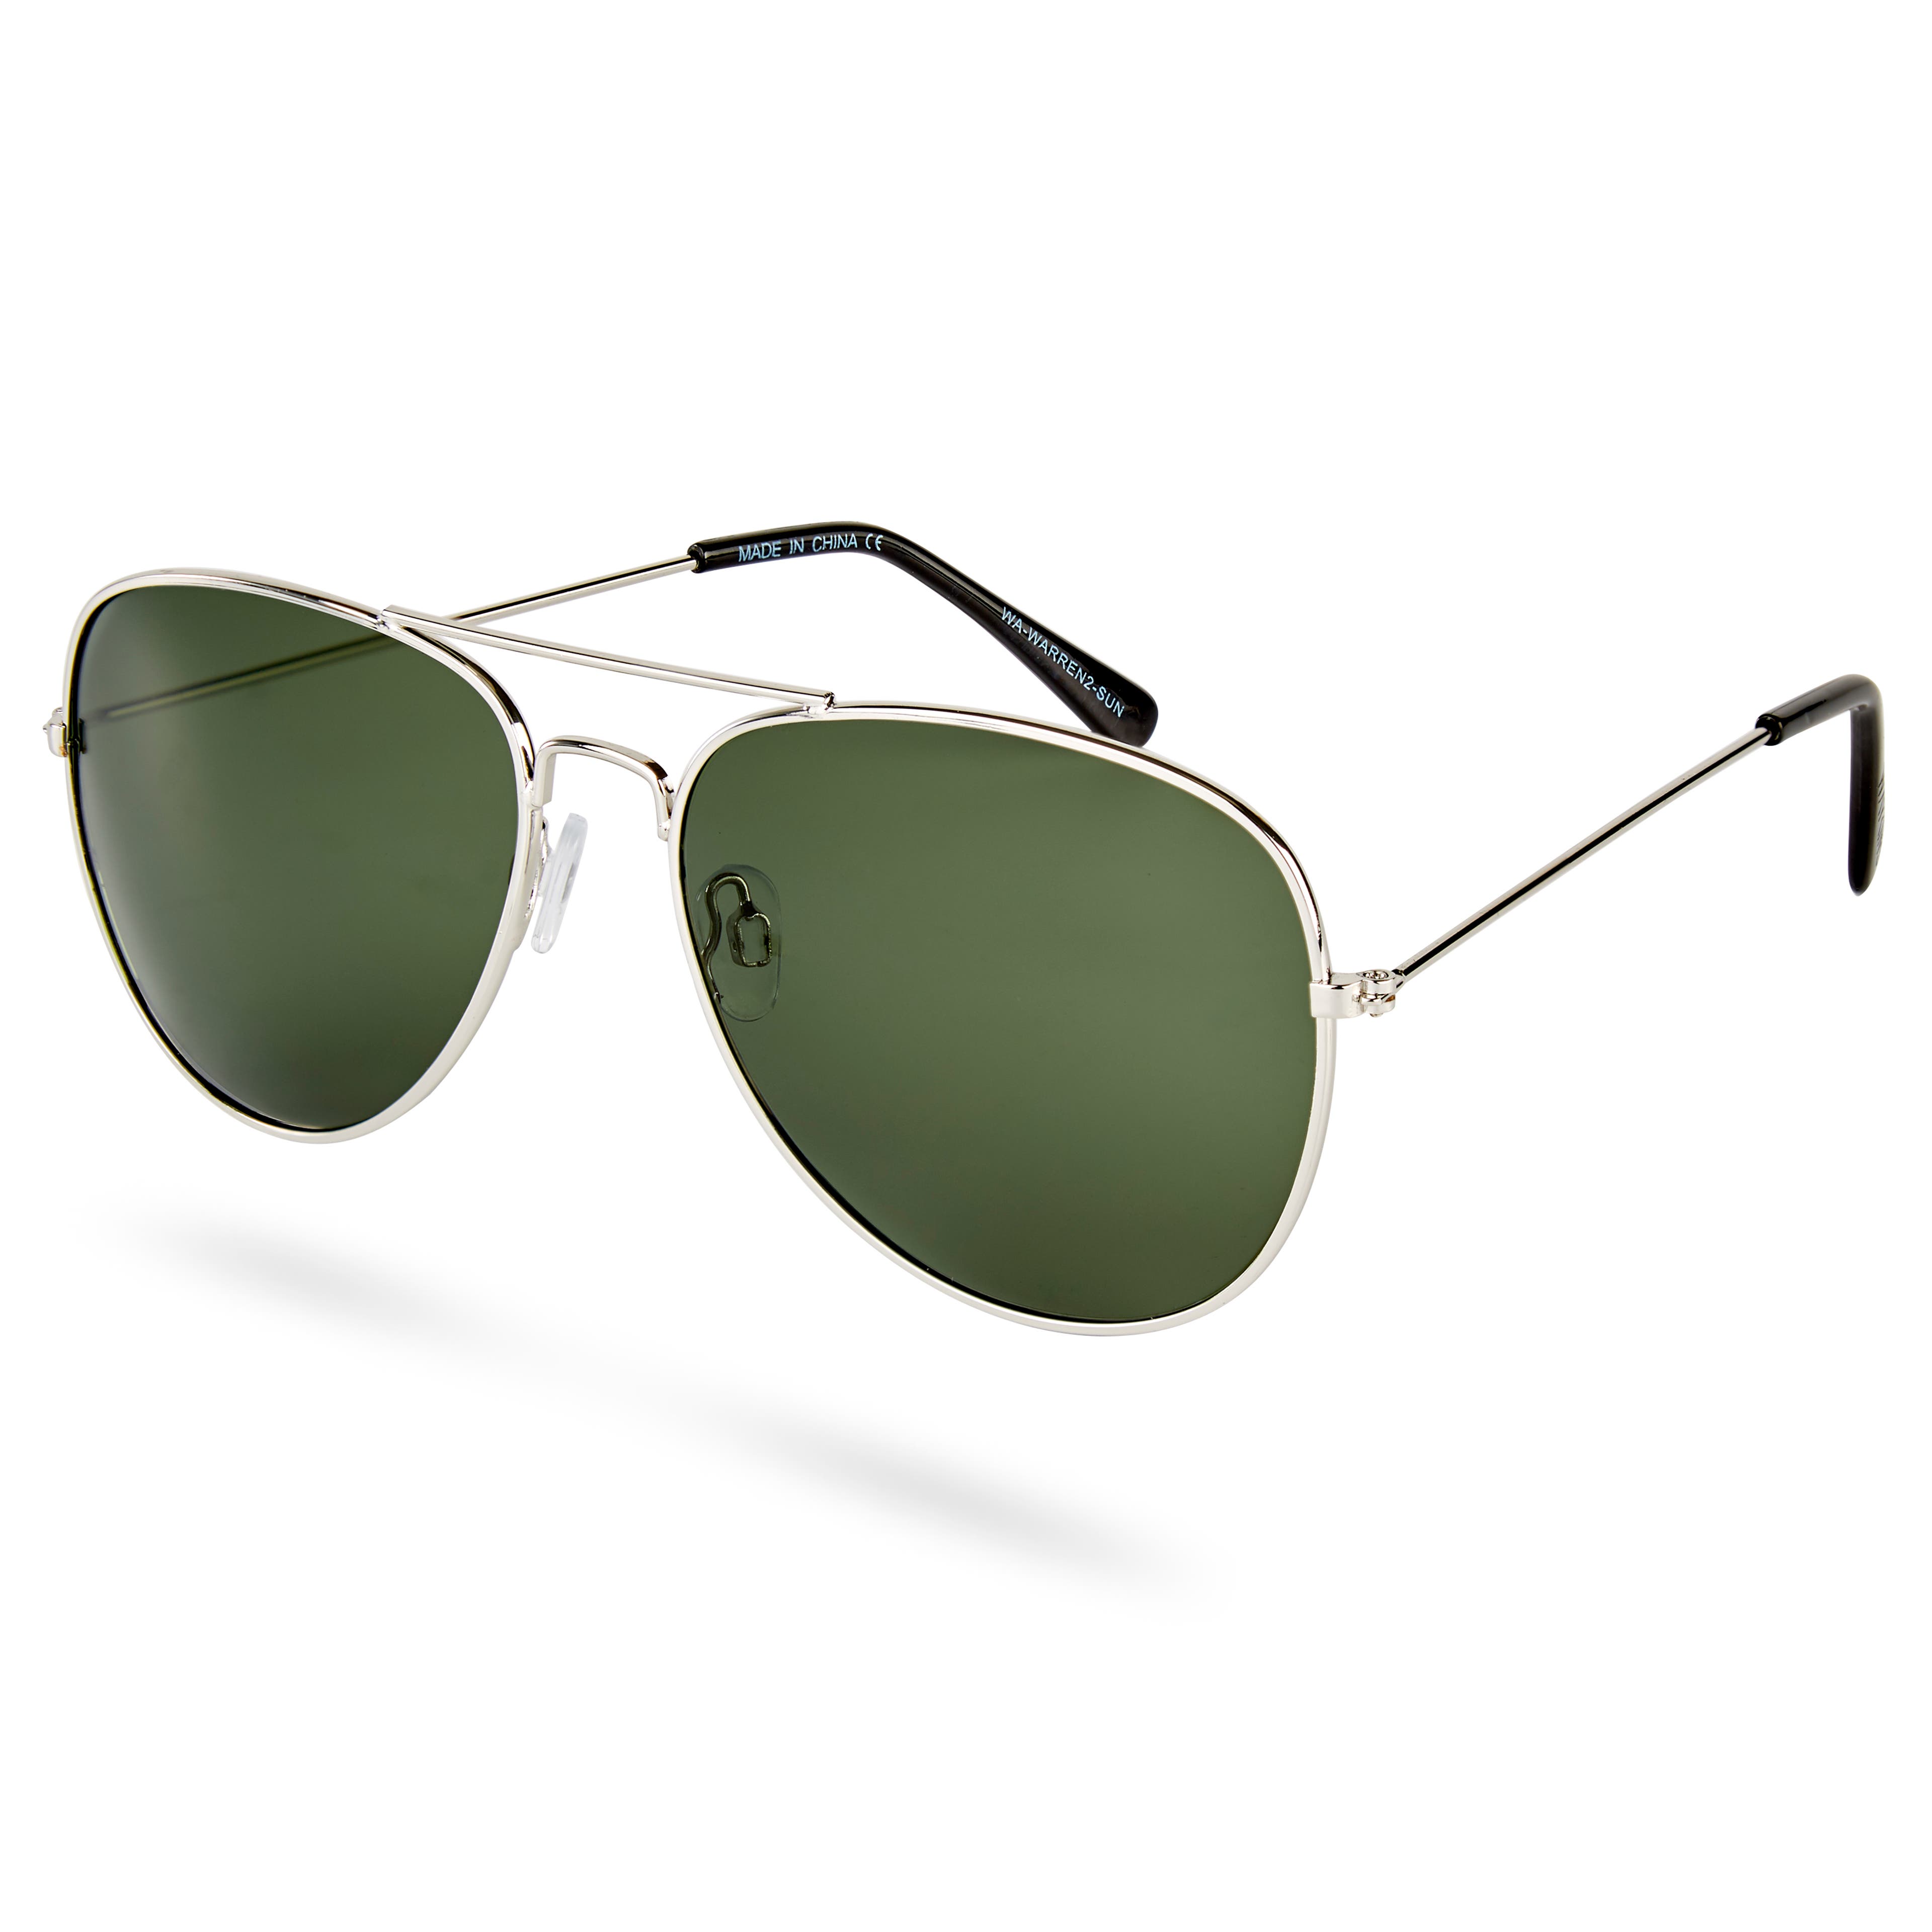 Ασημί & Πράσινα Γυαλιά Ηλίου Warren Aviator